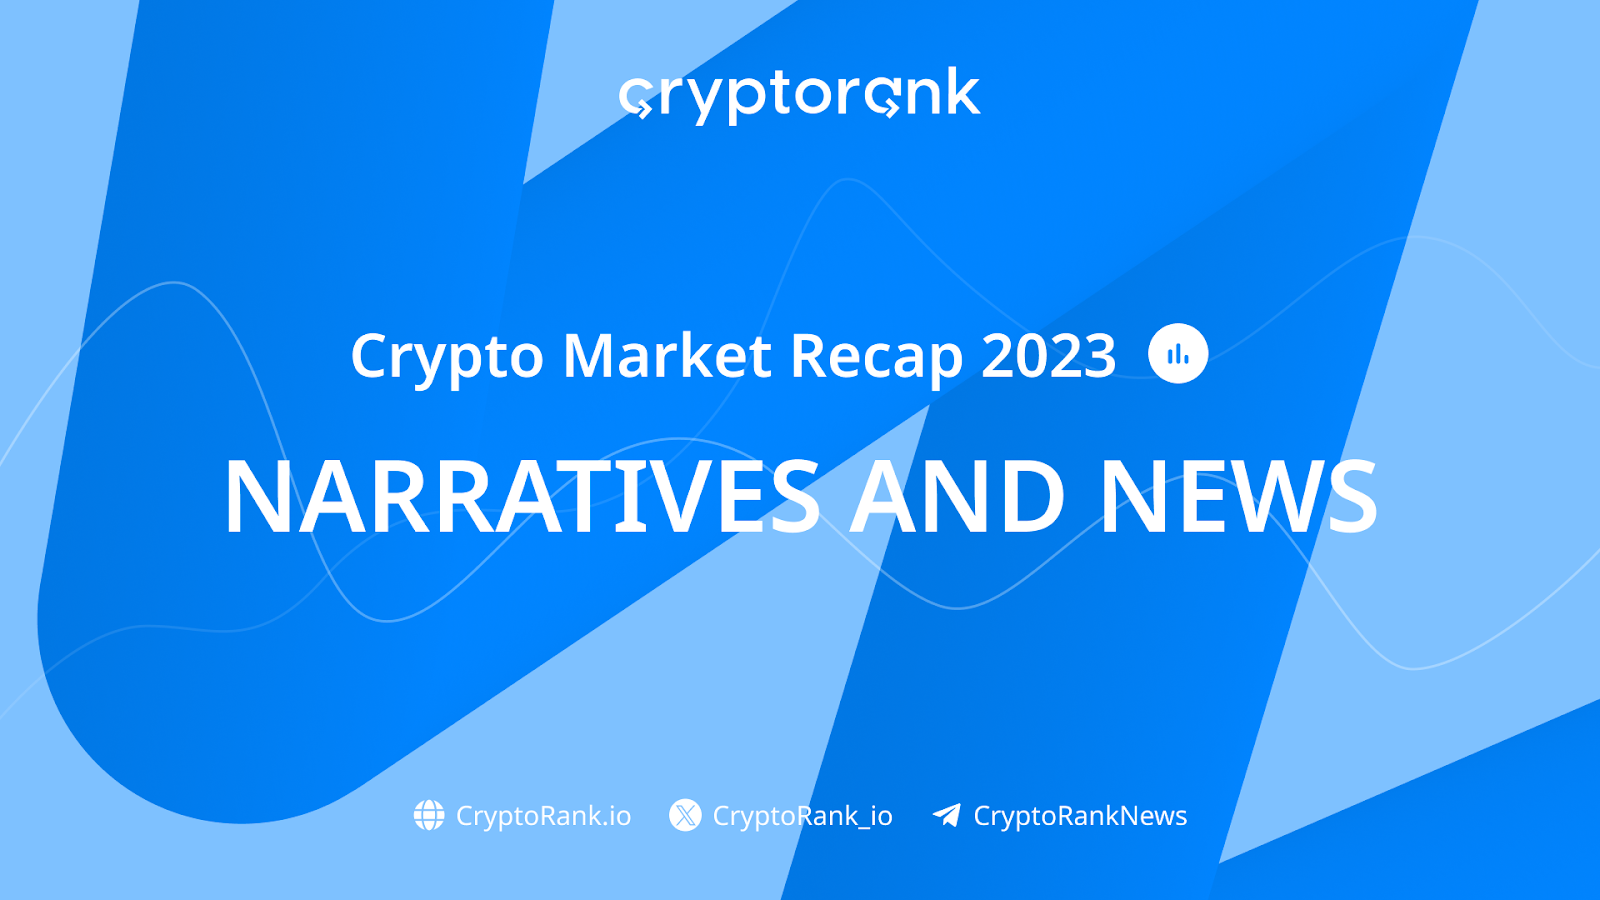 Kripto Piyasası Özeti 2023, Pt. 1: Anlatılar ve Haberler